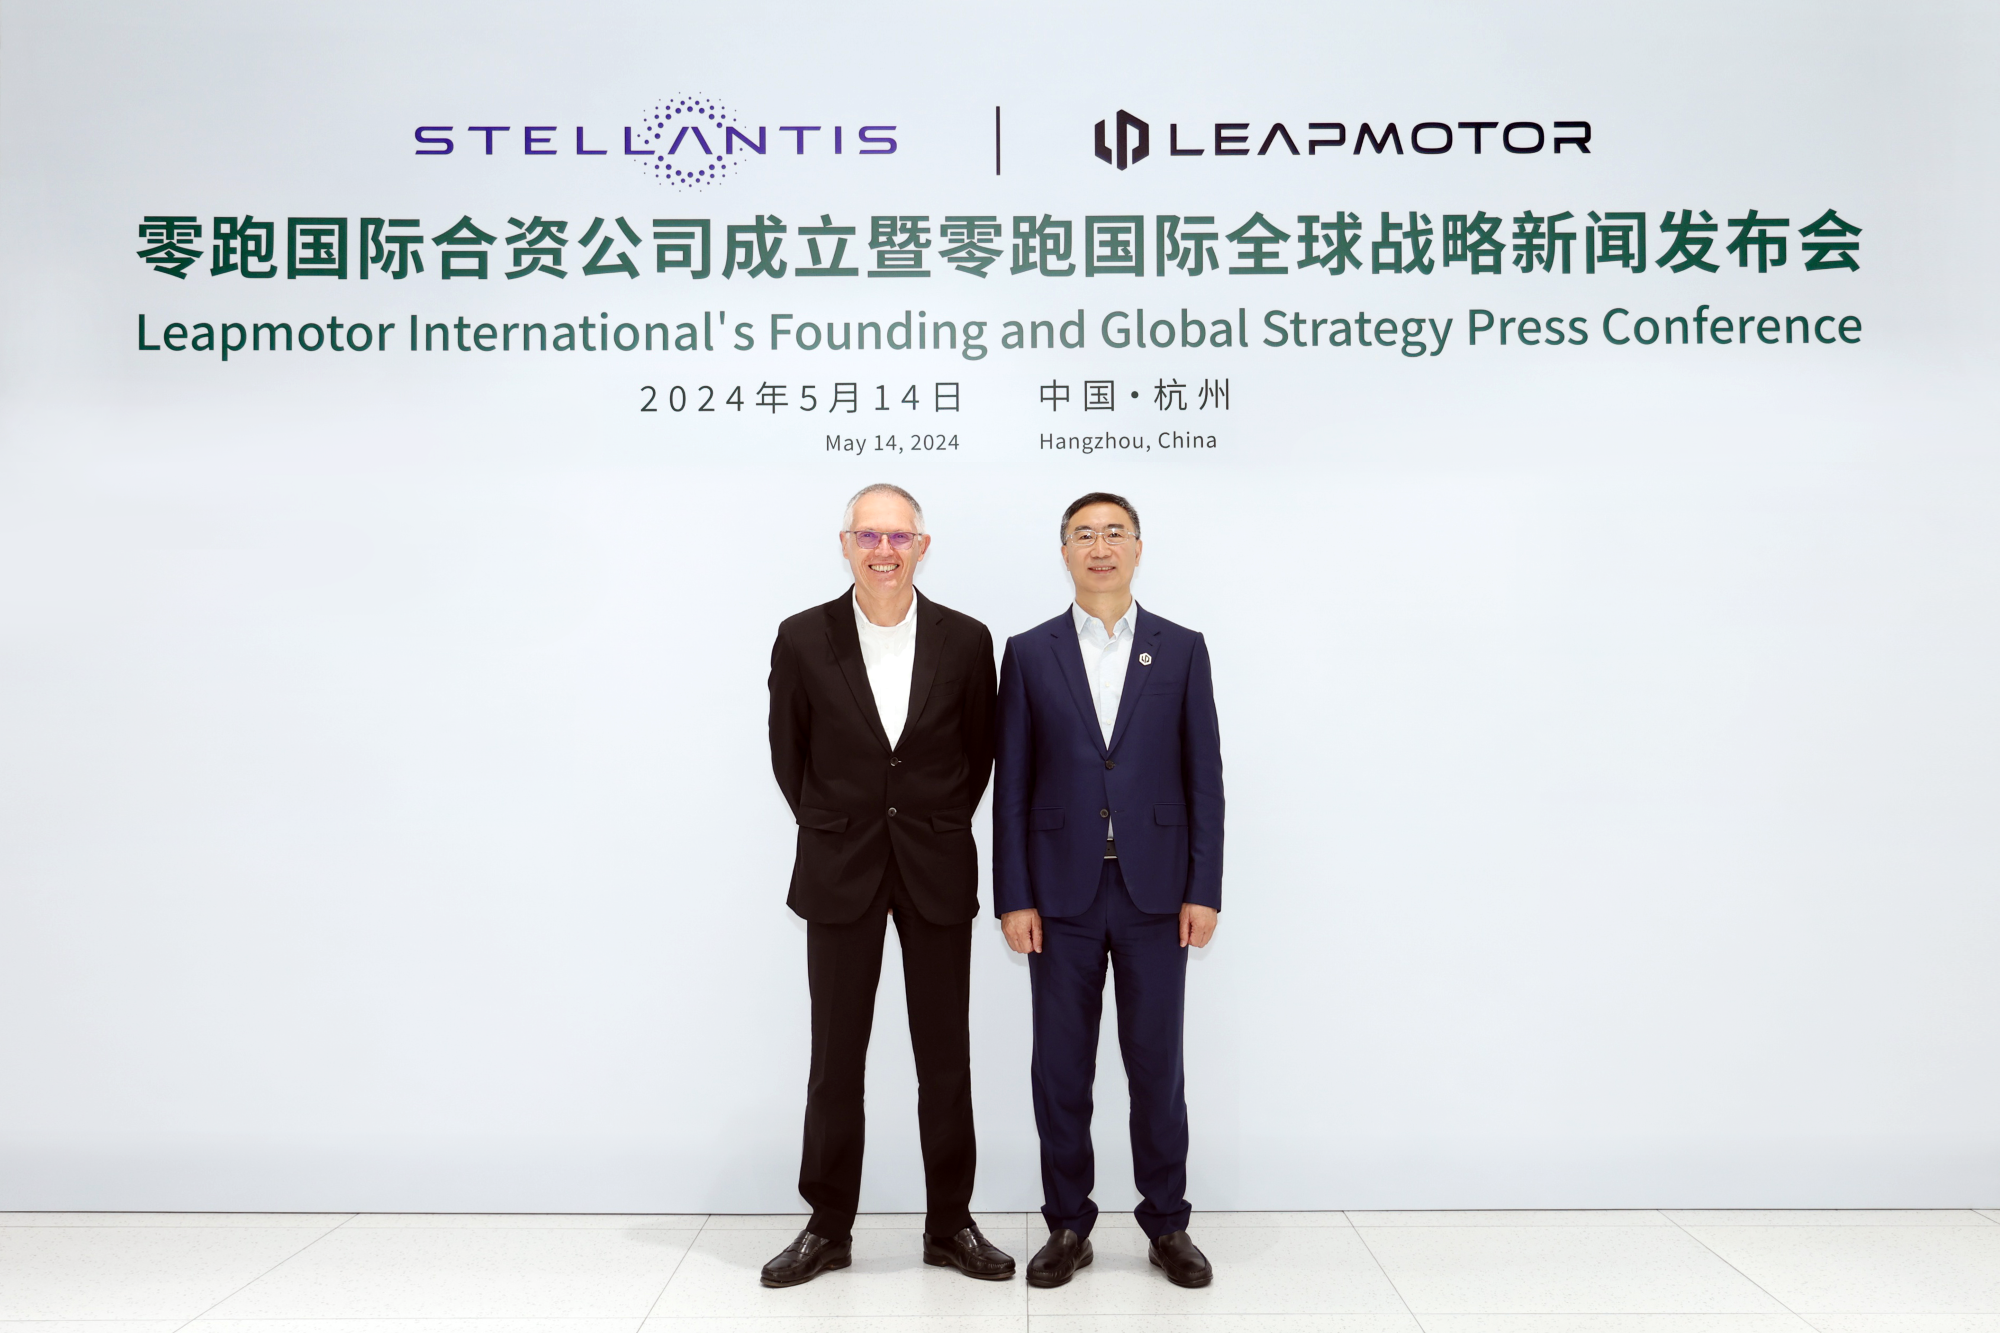 Τα αυτοκίνητα της Leapmotor έρχονται στην Ευρώπη μέσω του ομίλου Stellantis